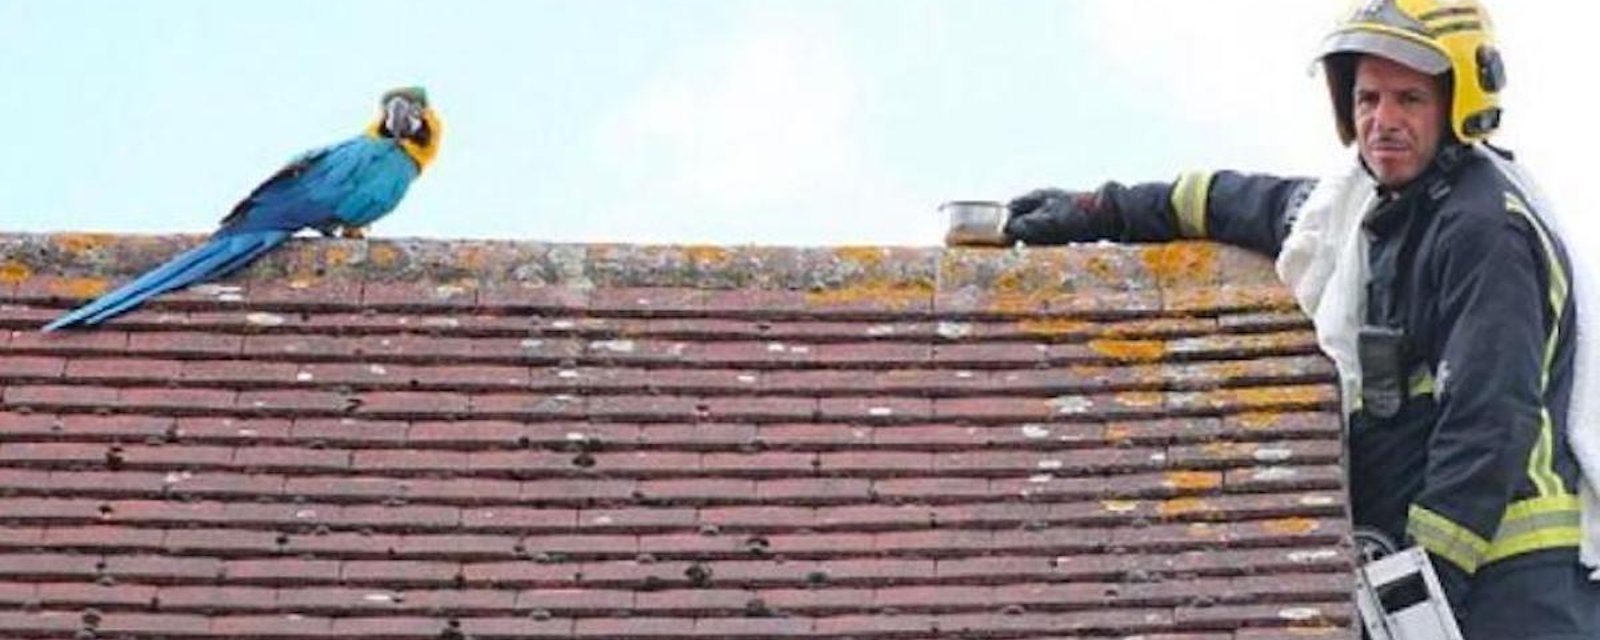 Un perroquet coincé sur un toit insulte les pompiers venus à son secours